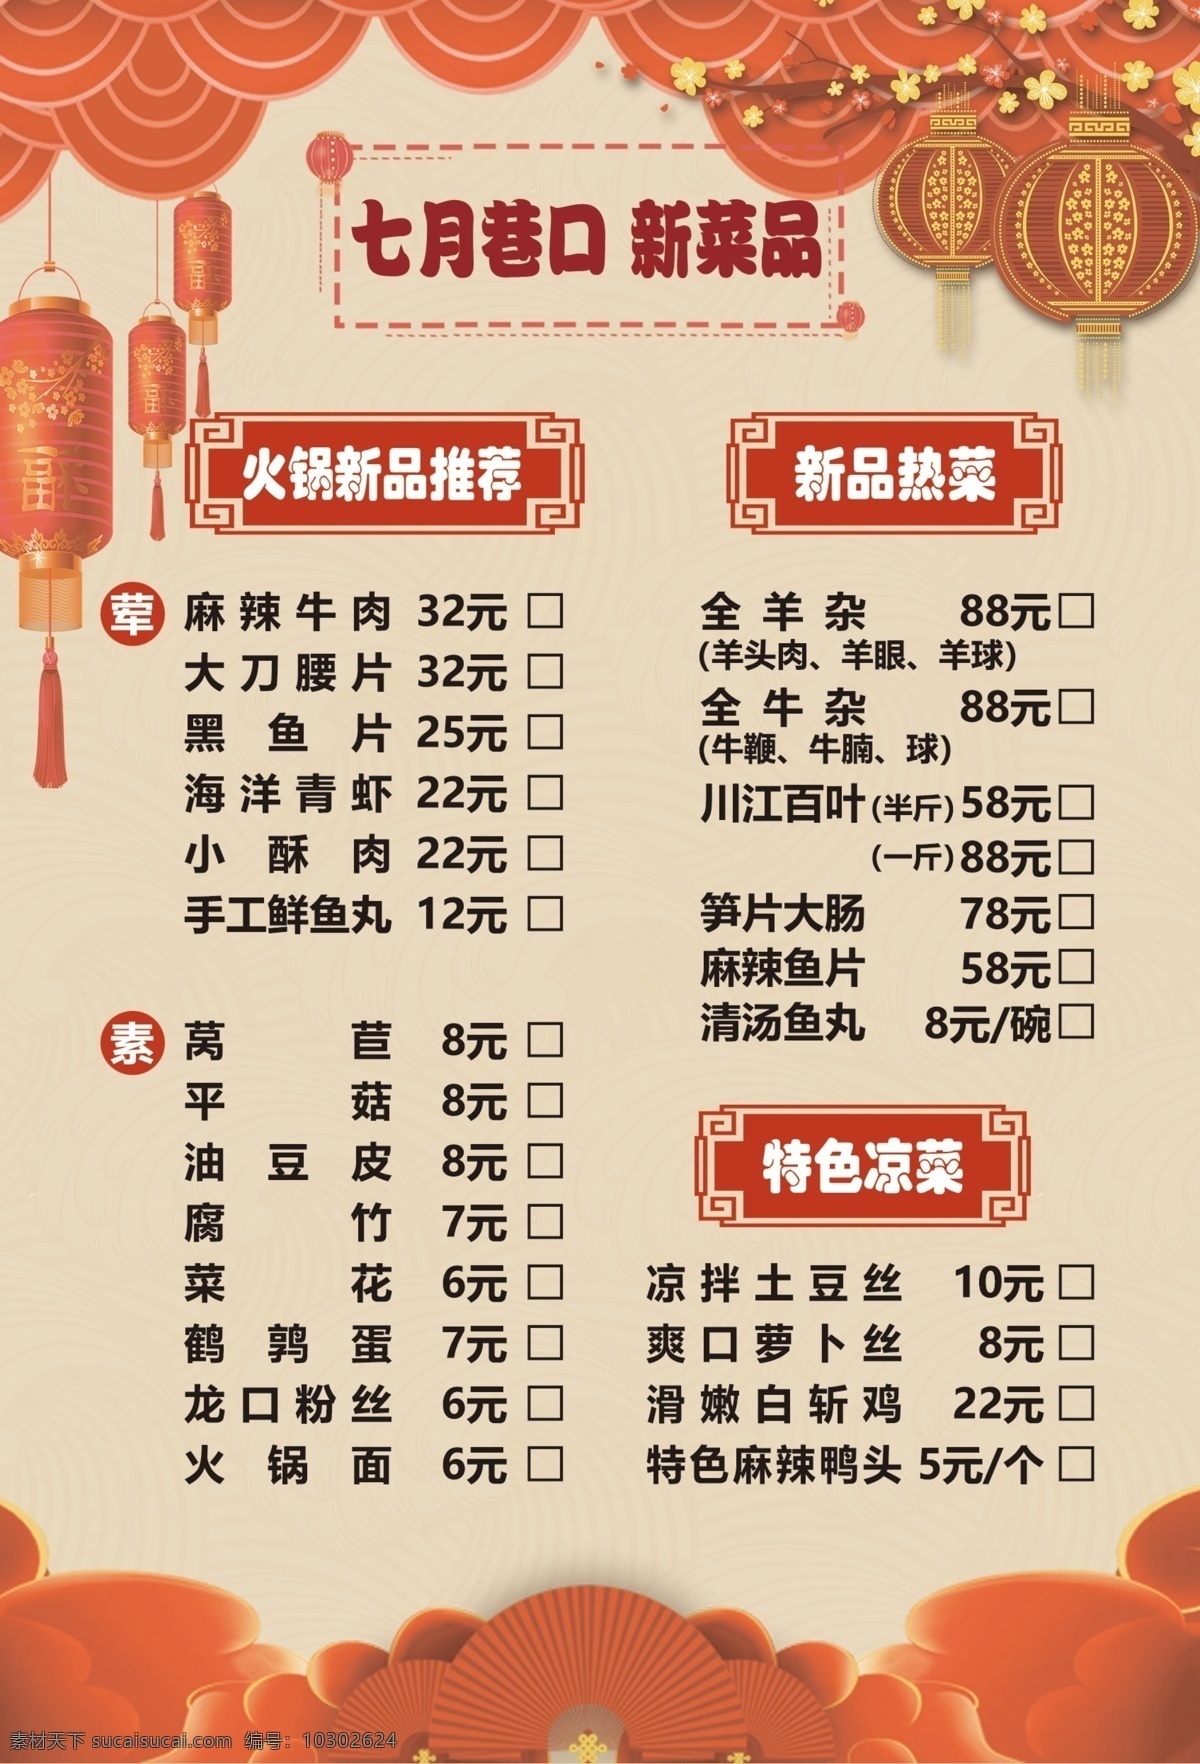 a5菜单图片 菜单 价格 新品 中国风 a5大小 菜单菜谱